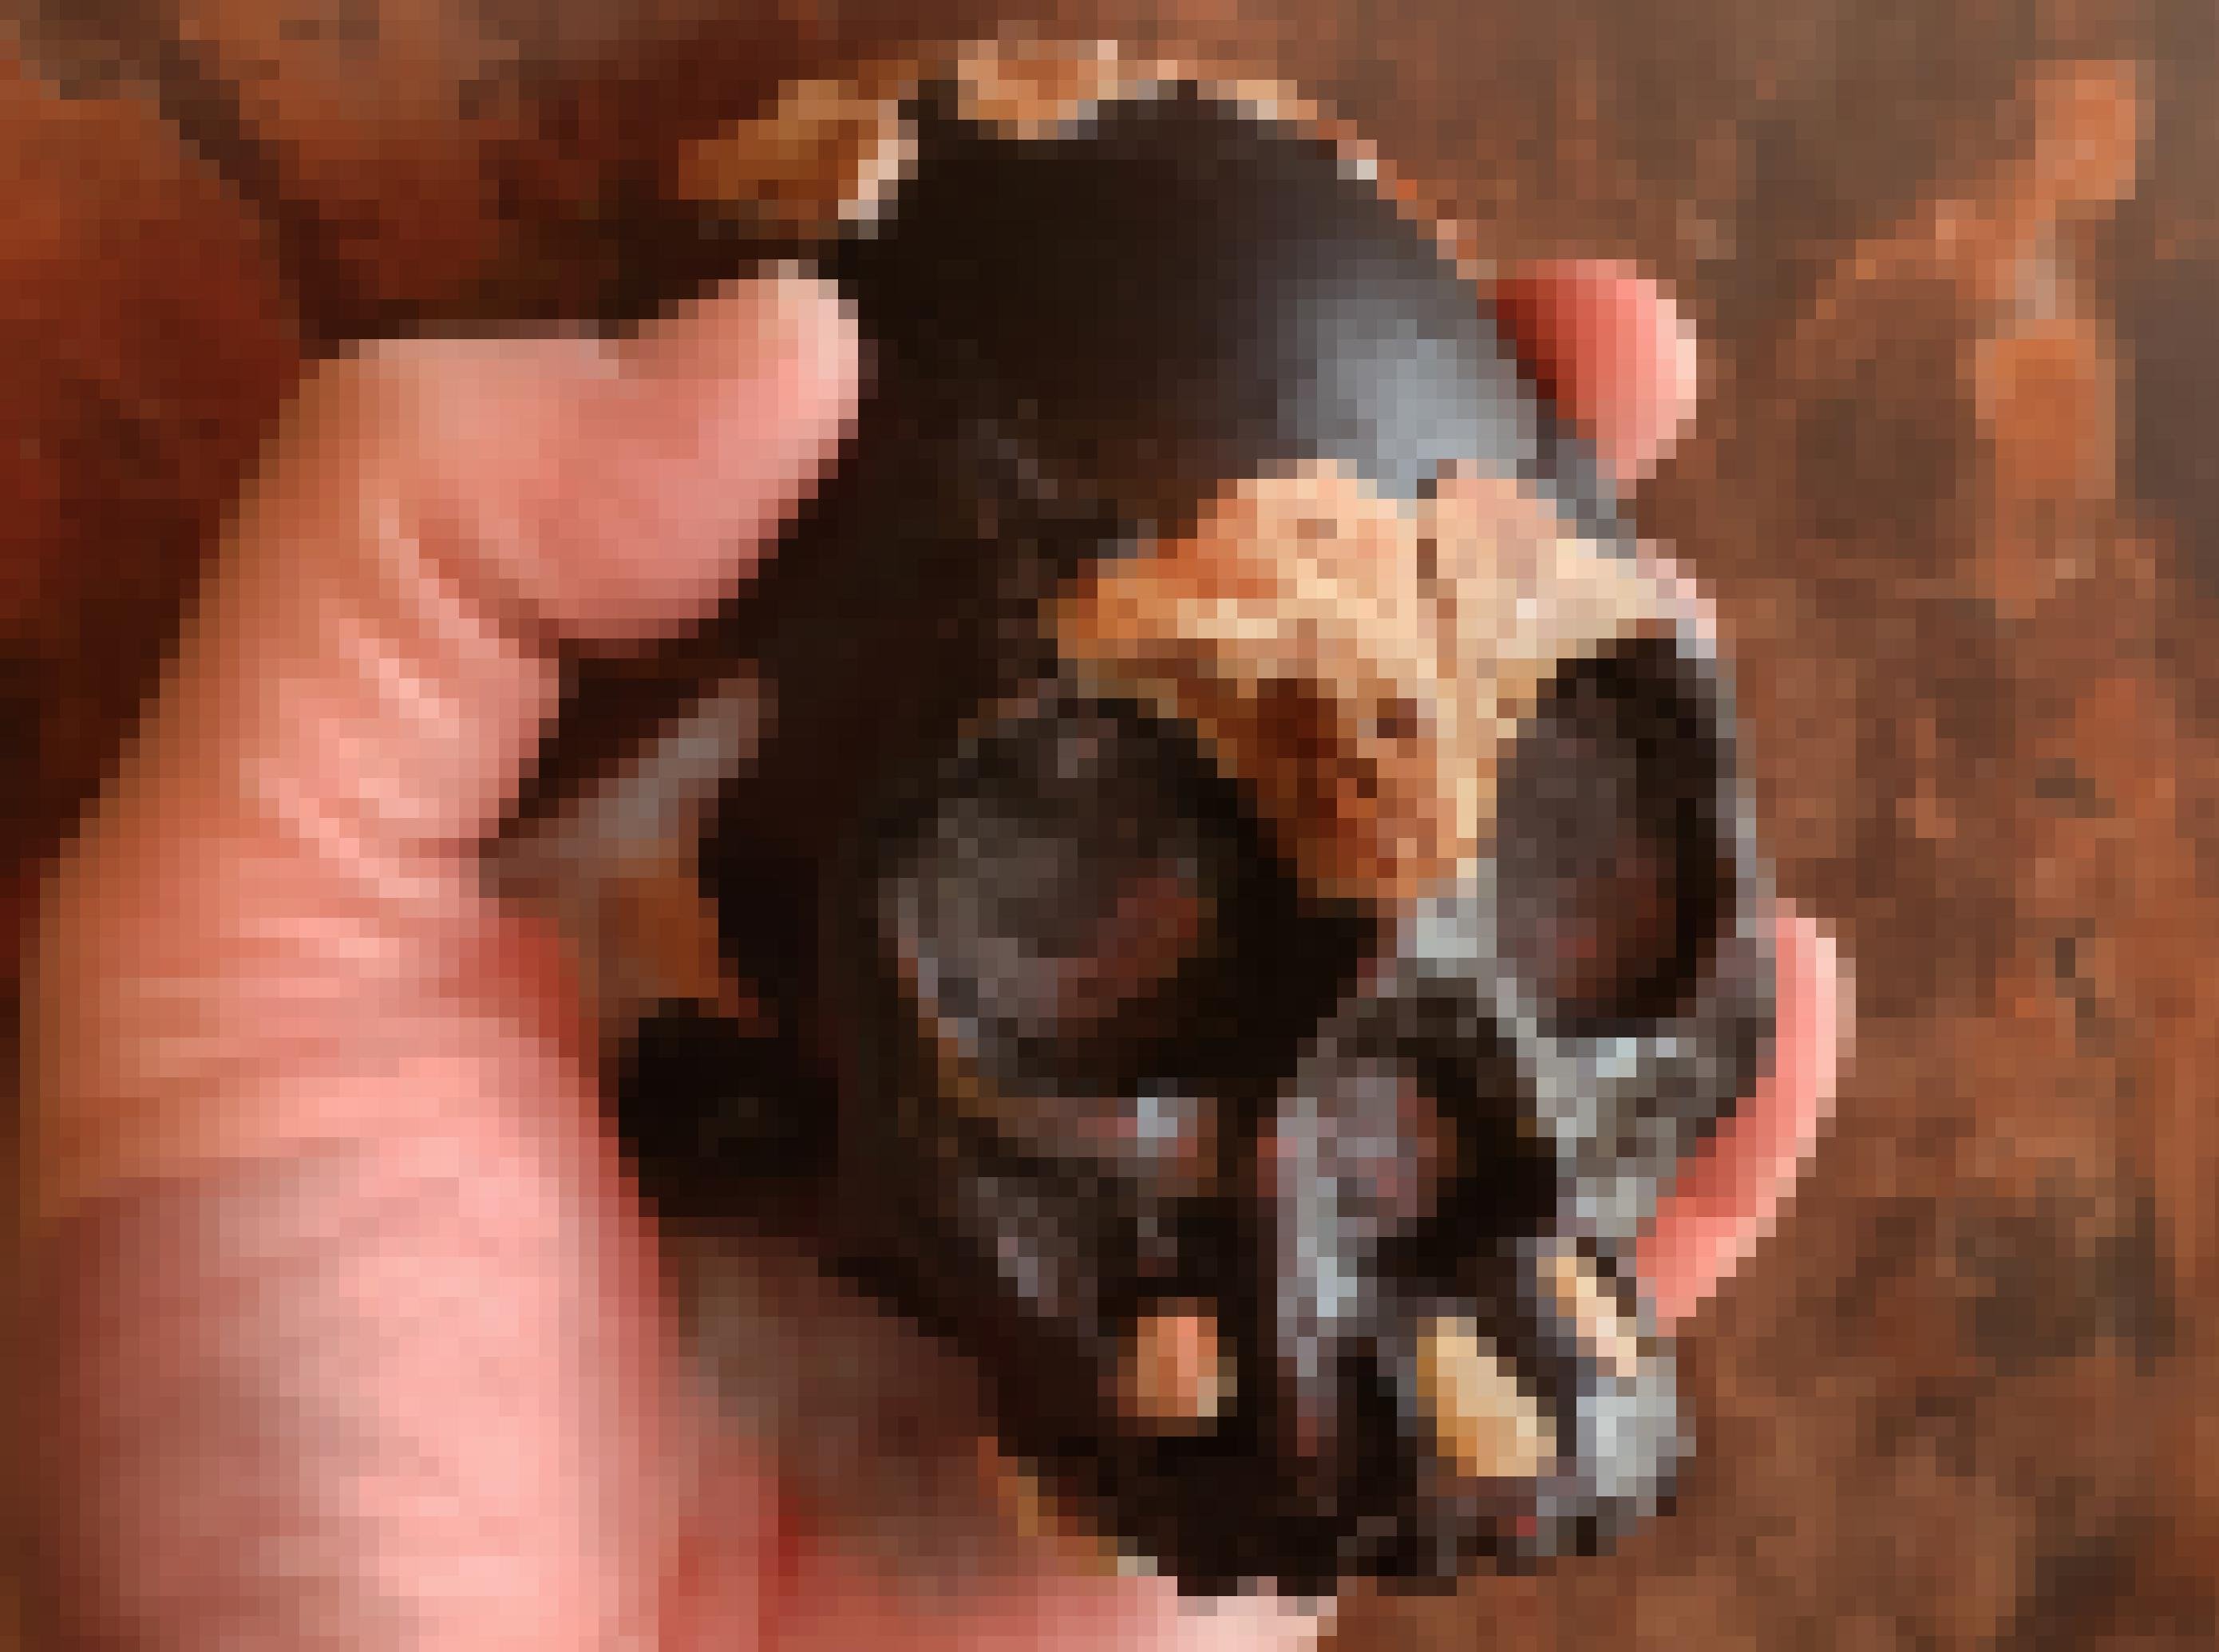 Zu sehen ist eine menschliche Hand, die einen rekonstruierten, kleinen Kinderschädel hält. Die Originalknochen im Stirnbereich, dem Schädel sowie die Zähne sind gelblich-hellbraun, der restliche, rekonstruierte Schädelteil besteht aus einer schwarzen Masse. Den Hintergrund bildet bräunliches Felsgestein.